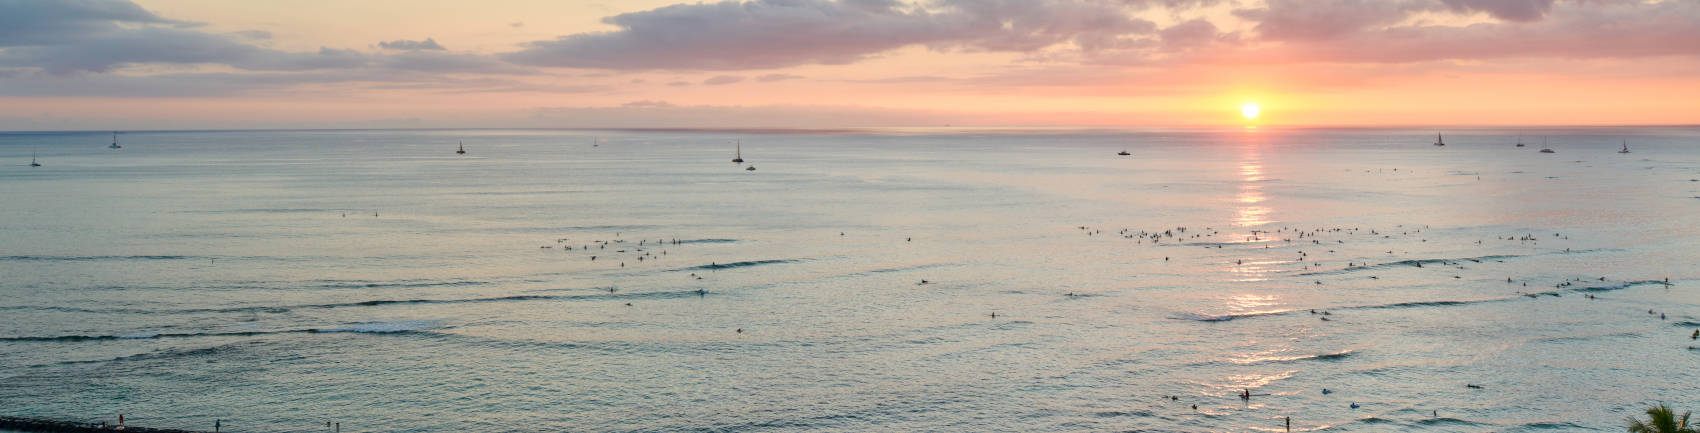 アストン・ワイキキ・サークル・ホテルから見た水平線に沈む夕日とワイキキビーチの美しい景色